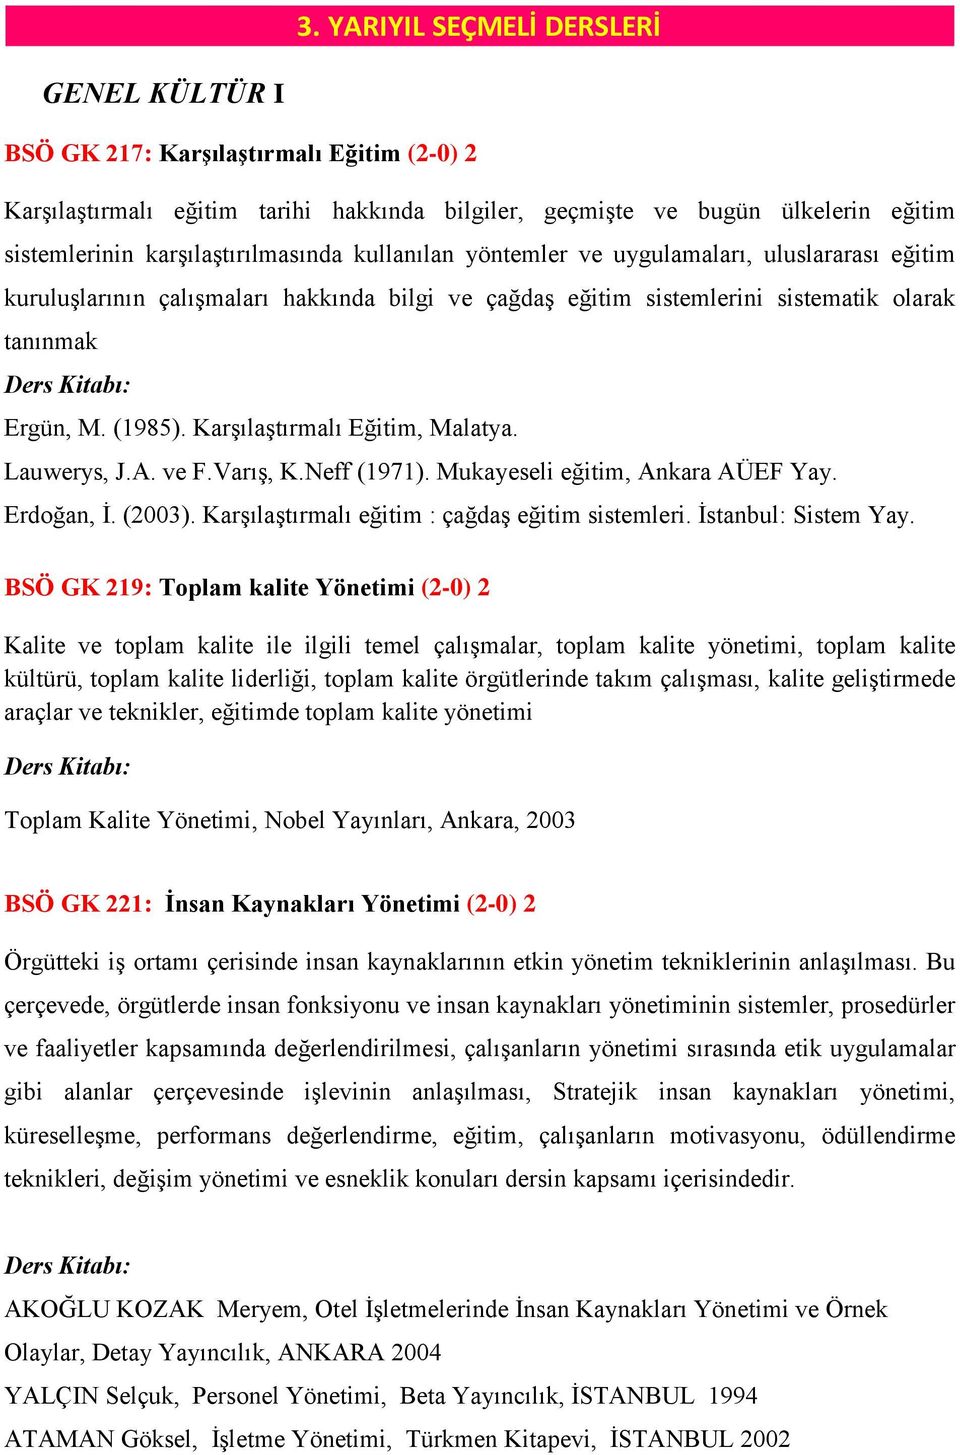 Karşılaştırmalı Eğitim, Malatya. Lauwerys, J.A. ve F.Varış, K.Neff (1971). Mukayeseli eğitim, Ankara AÜEF Yay. Erdoğan, İ. (2003). Karşılaştırmalı eğitim : çağdaş eğitim sistemleri.